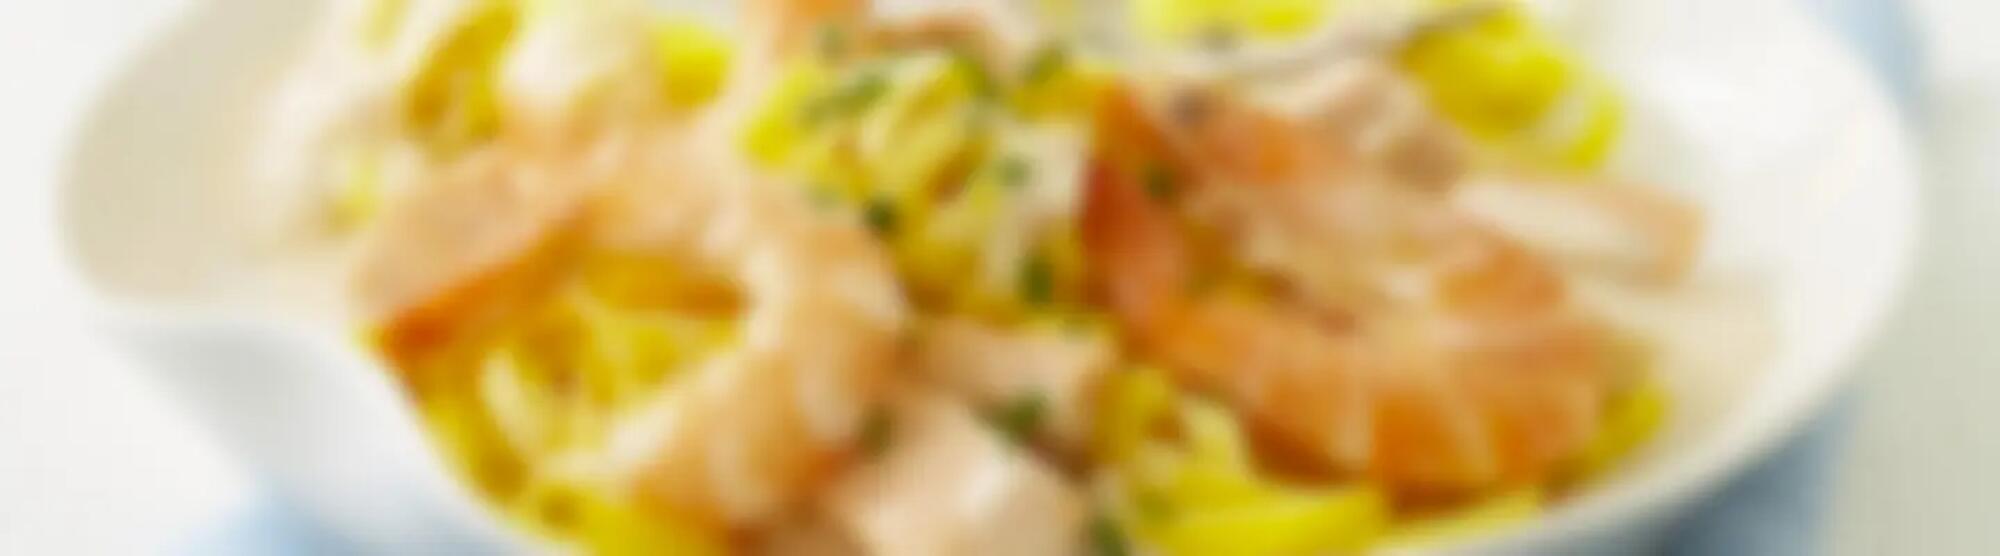 Recette : Pâtes au saumon à la crème de crevettes et fromage frais ail & fines herbes